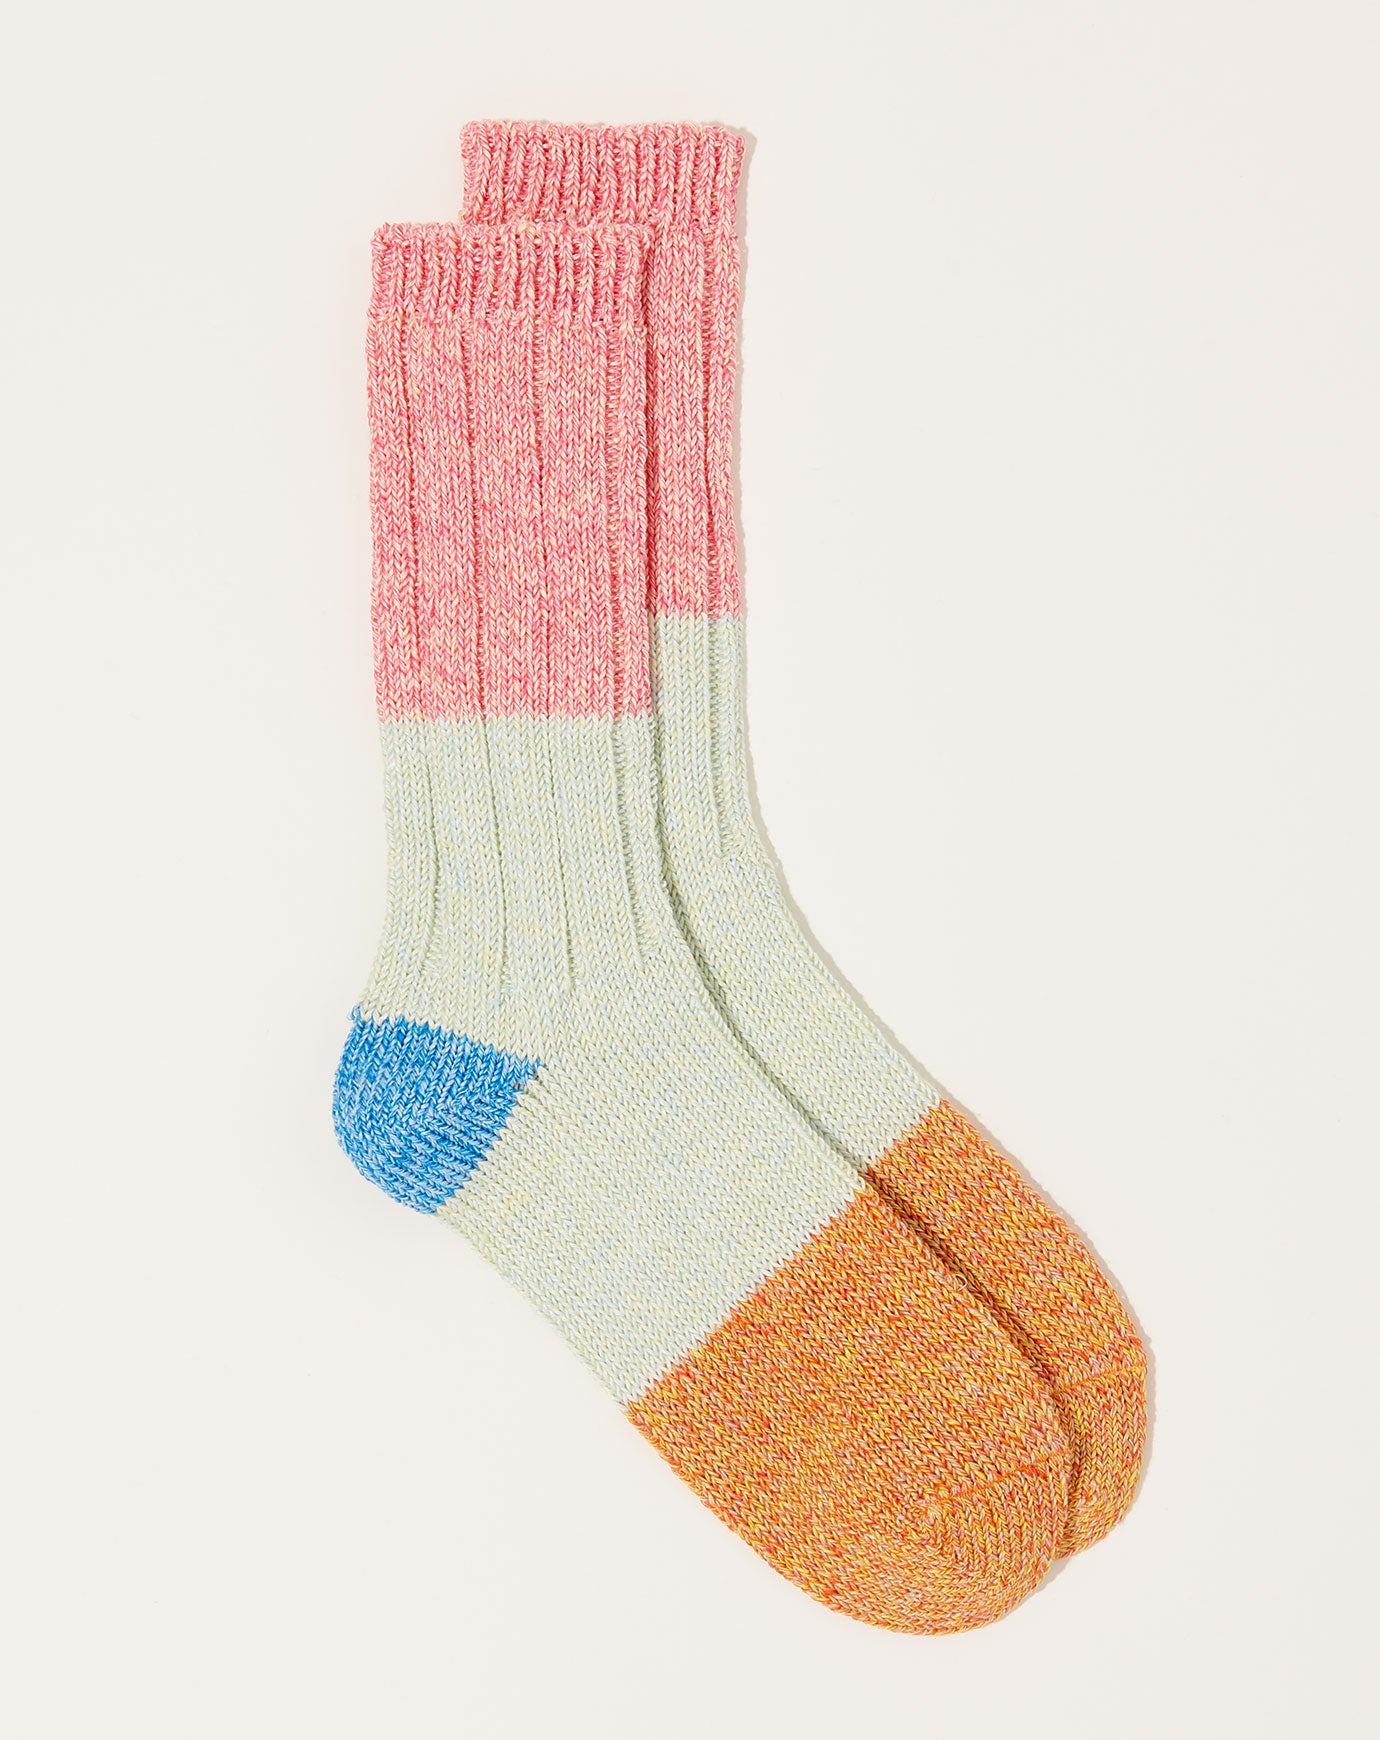 Kapital 56 Yarns Linen Grandrelle Socks in Pink